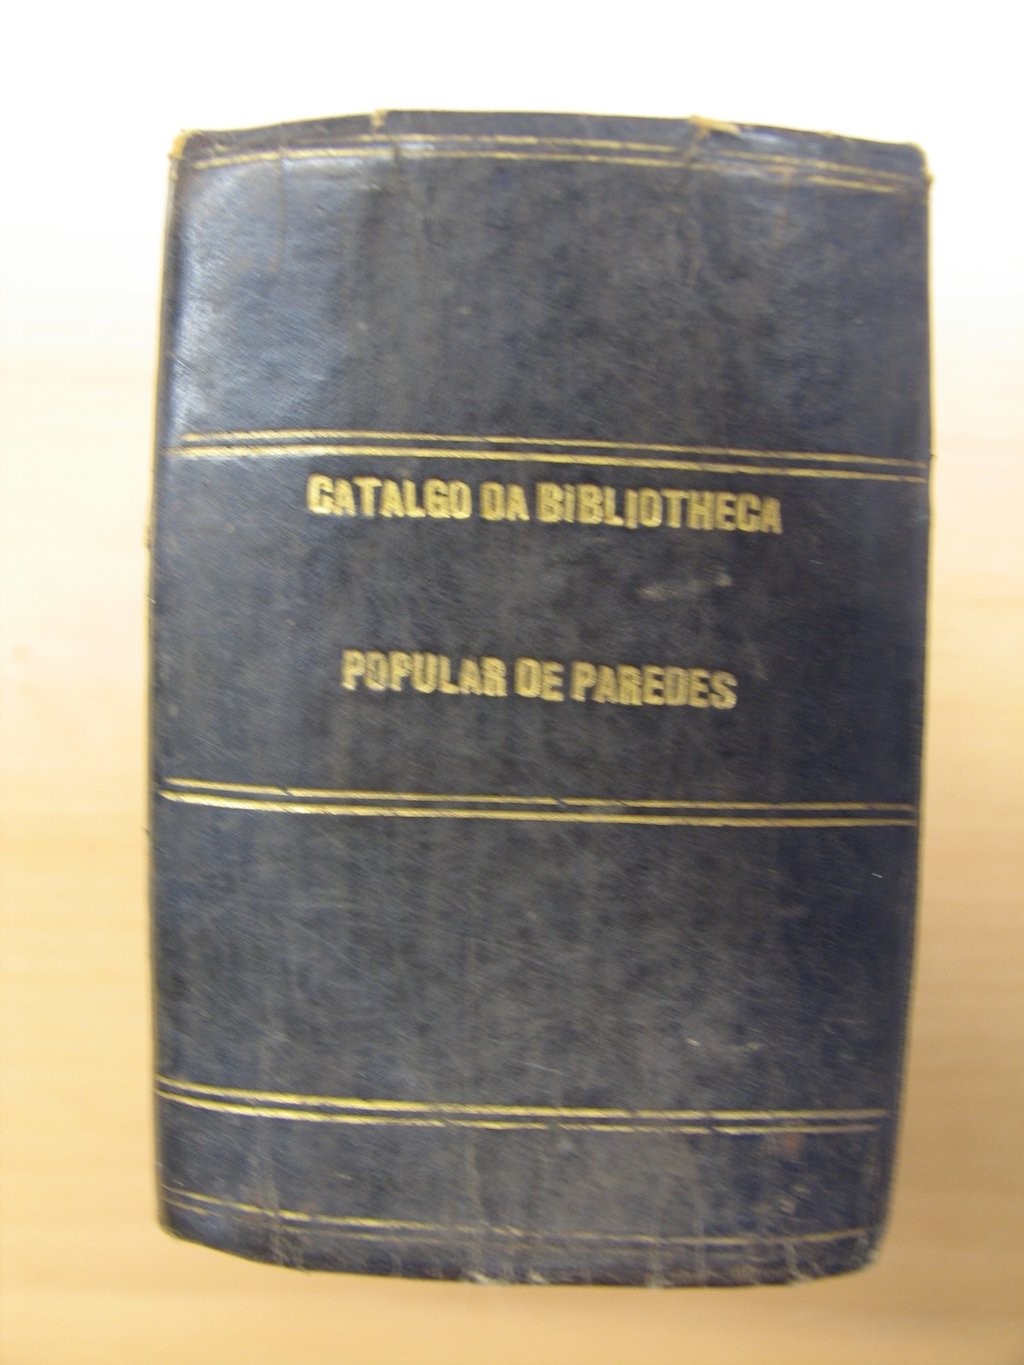 catalogo_da_biblioteca_popular_de_paredes1